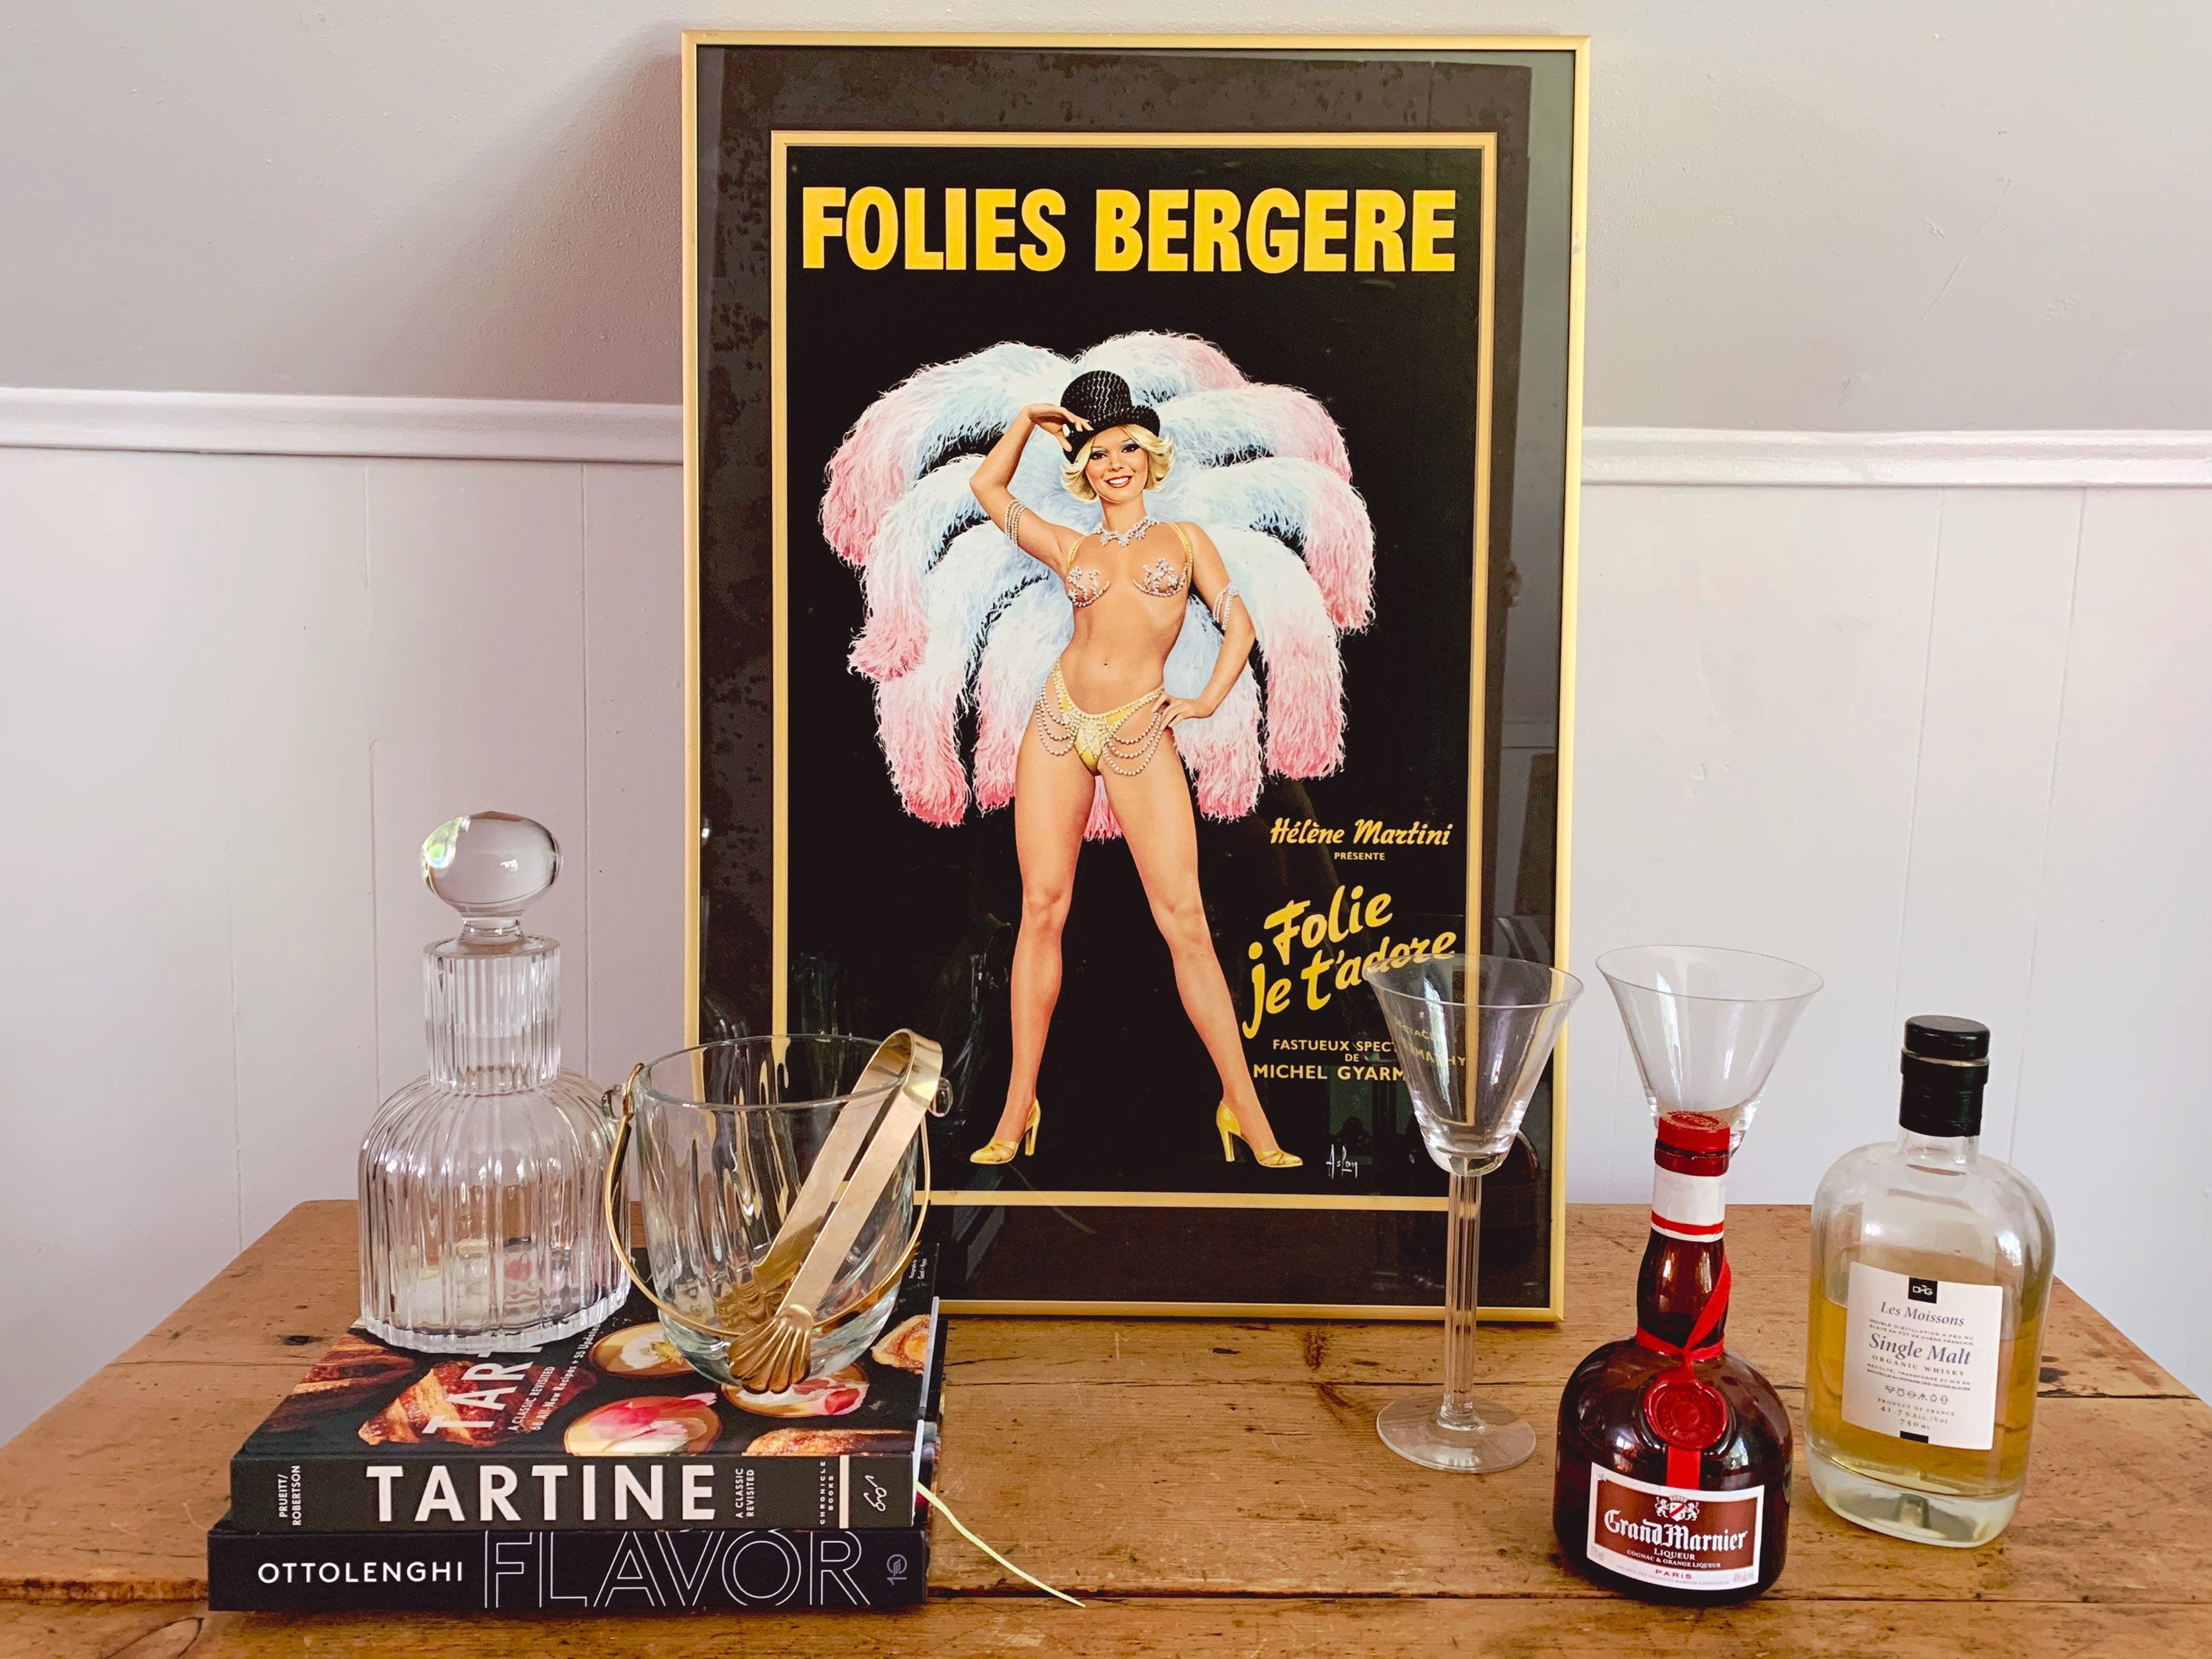 Vintage 1970s Folies Bergere Folie Je T'adore Poster by Aslan Alain Gourdon in Gold Metal Frame | Cabaret Dancer Advertising Poster